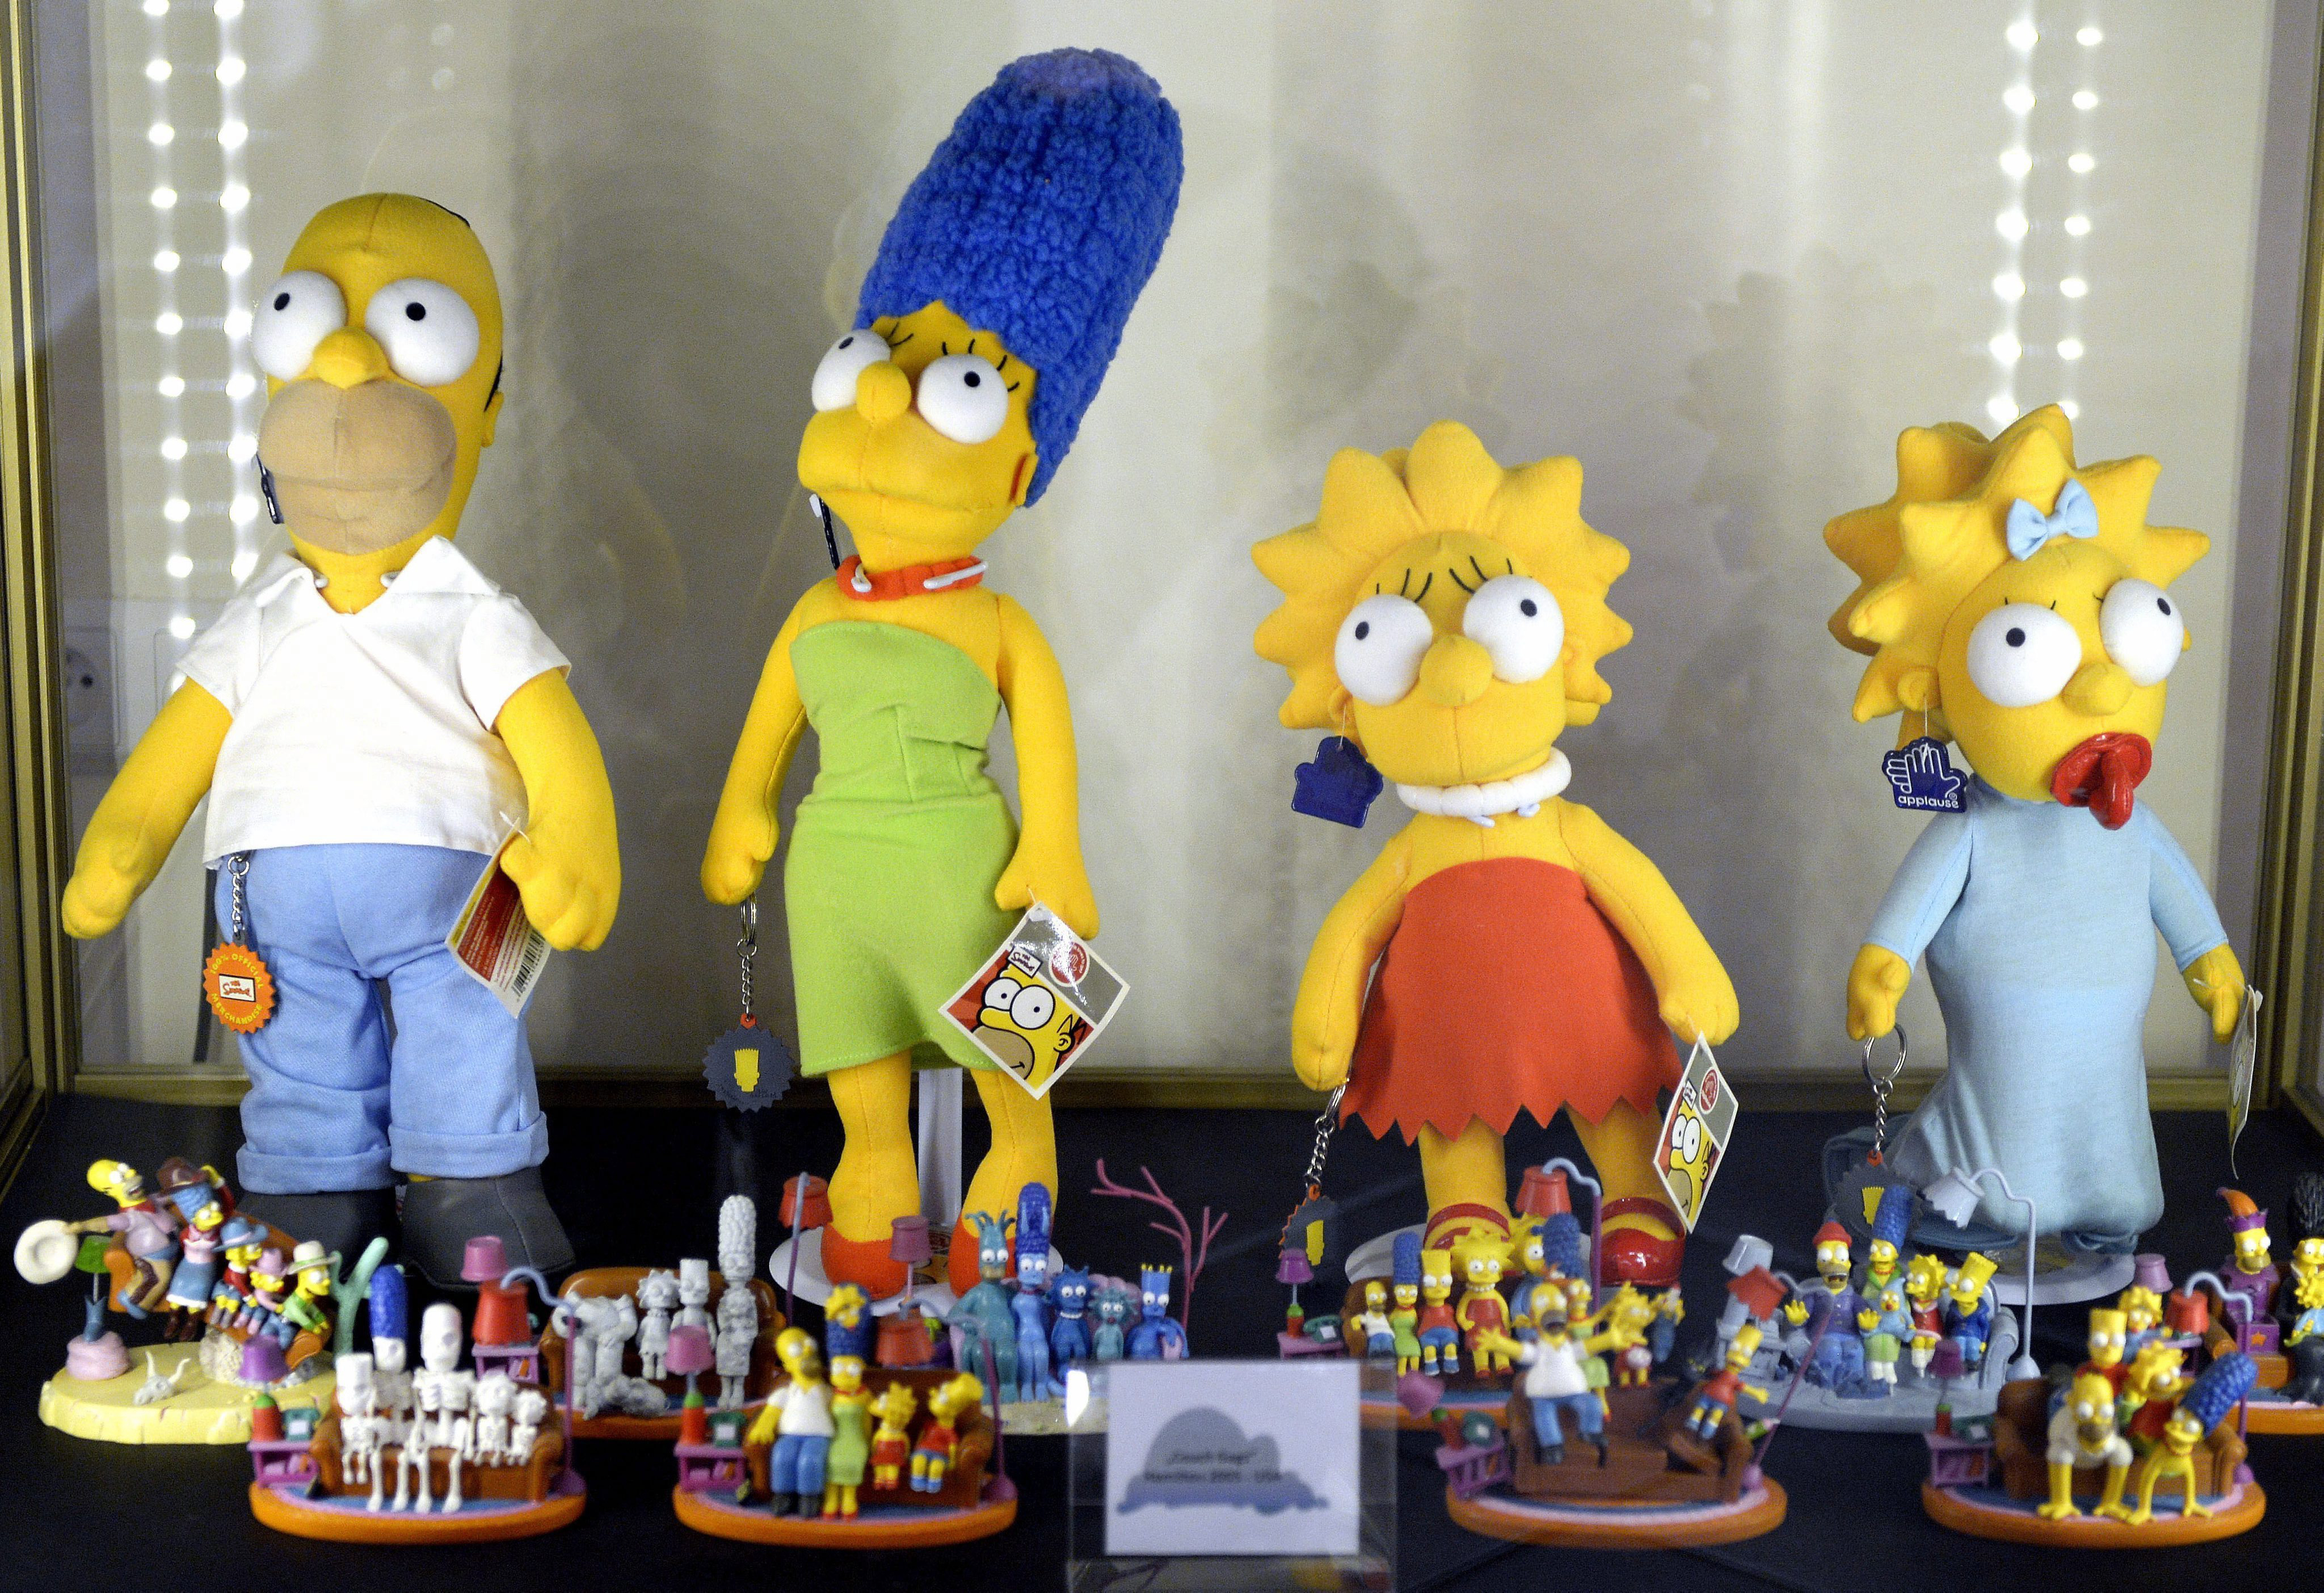 Los Simpson, la serie en la que está todo